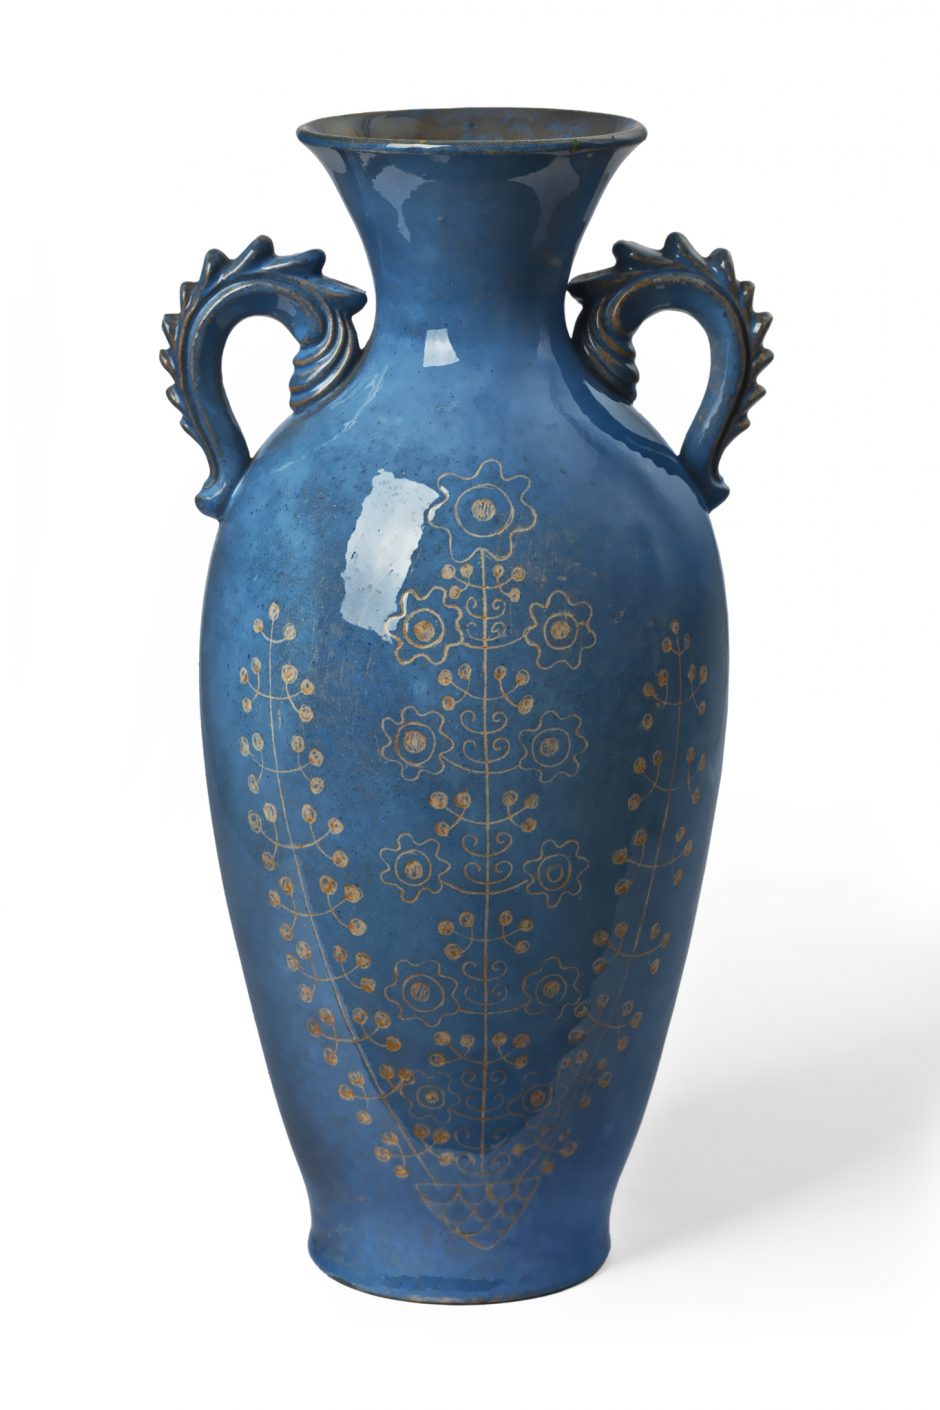 Kvies pamatyti žymaus keramiko V. Miknevičiaus pėdsakus molyje